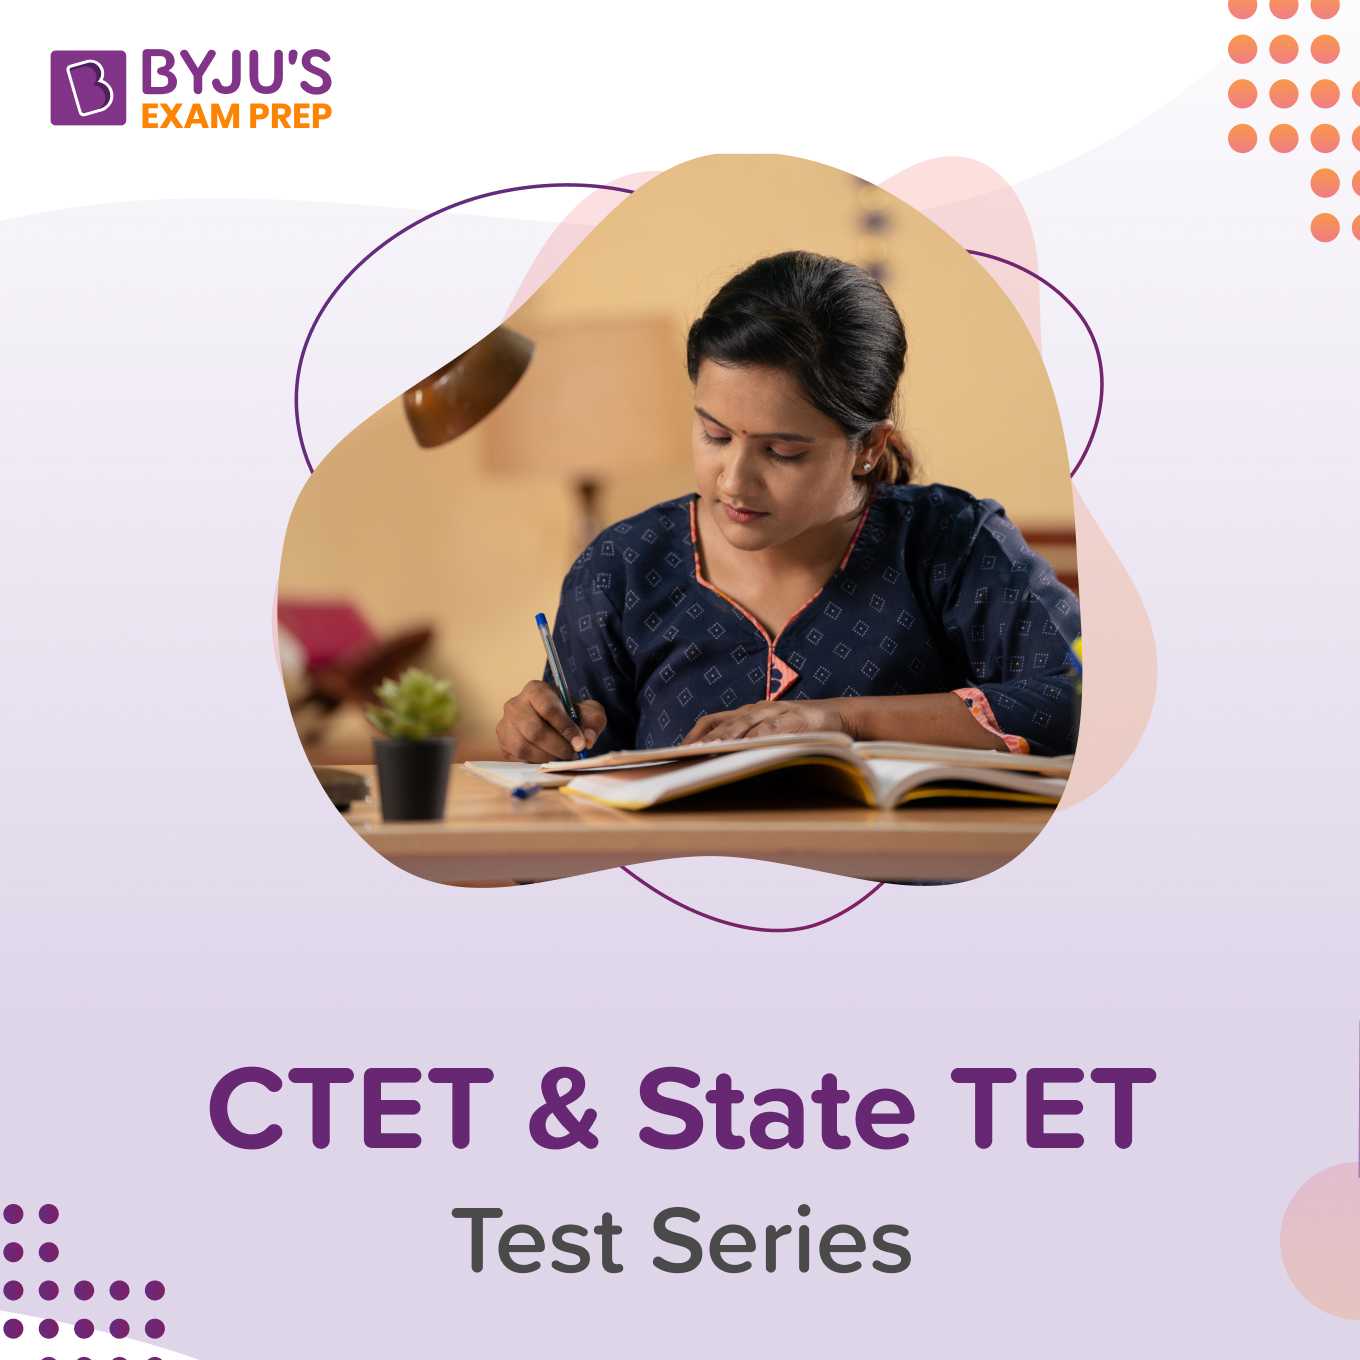 CTET & State TET - Test Series